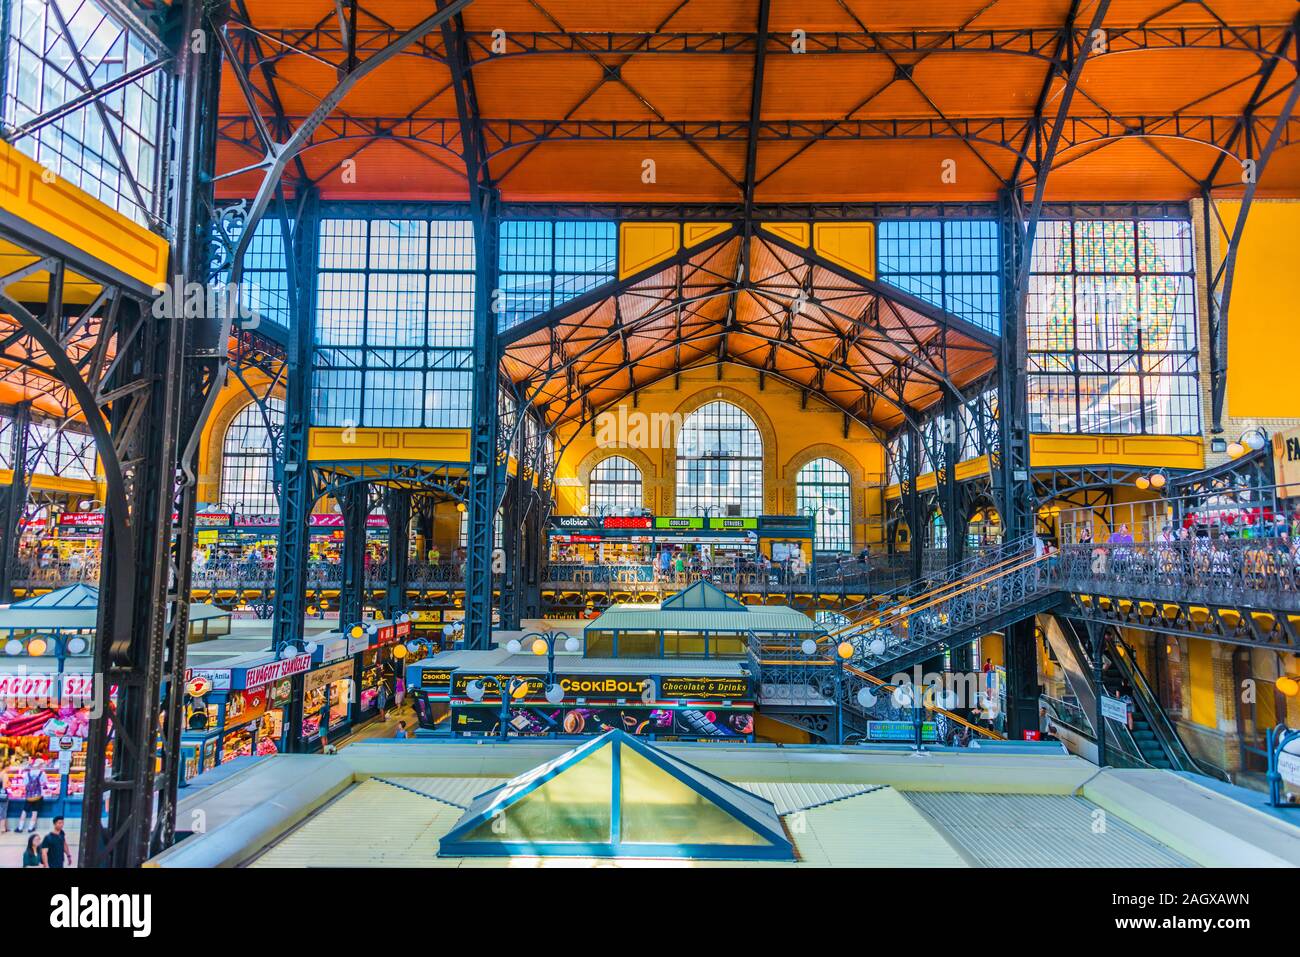 BUDAPEST, Ungarn - May 30, 2019: Große Markthalle oder die zentrale Markthalle in Budapest, Ungarn Stockfoto